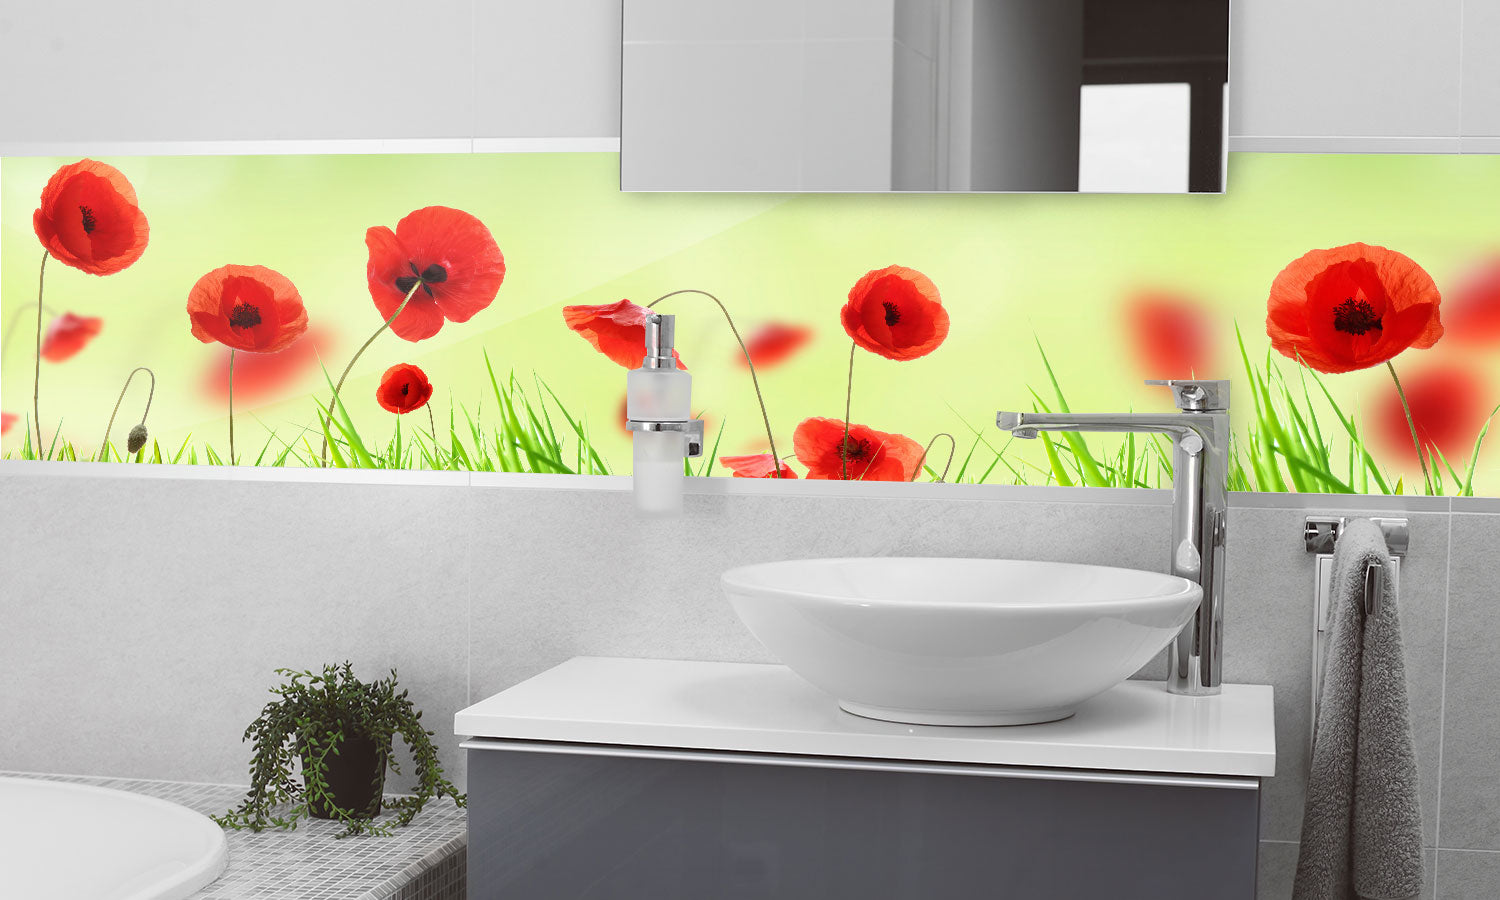 Stakla za kuhinje   Poppy meadow -  Stakleni / PVC ploče / Pleksiglas -  sa printom za kuhinju, Zidne obloge PKU300